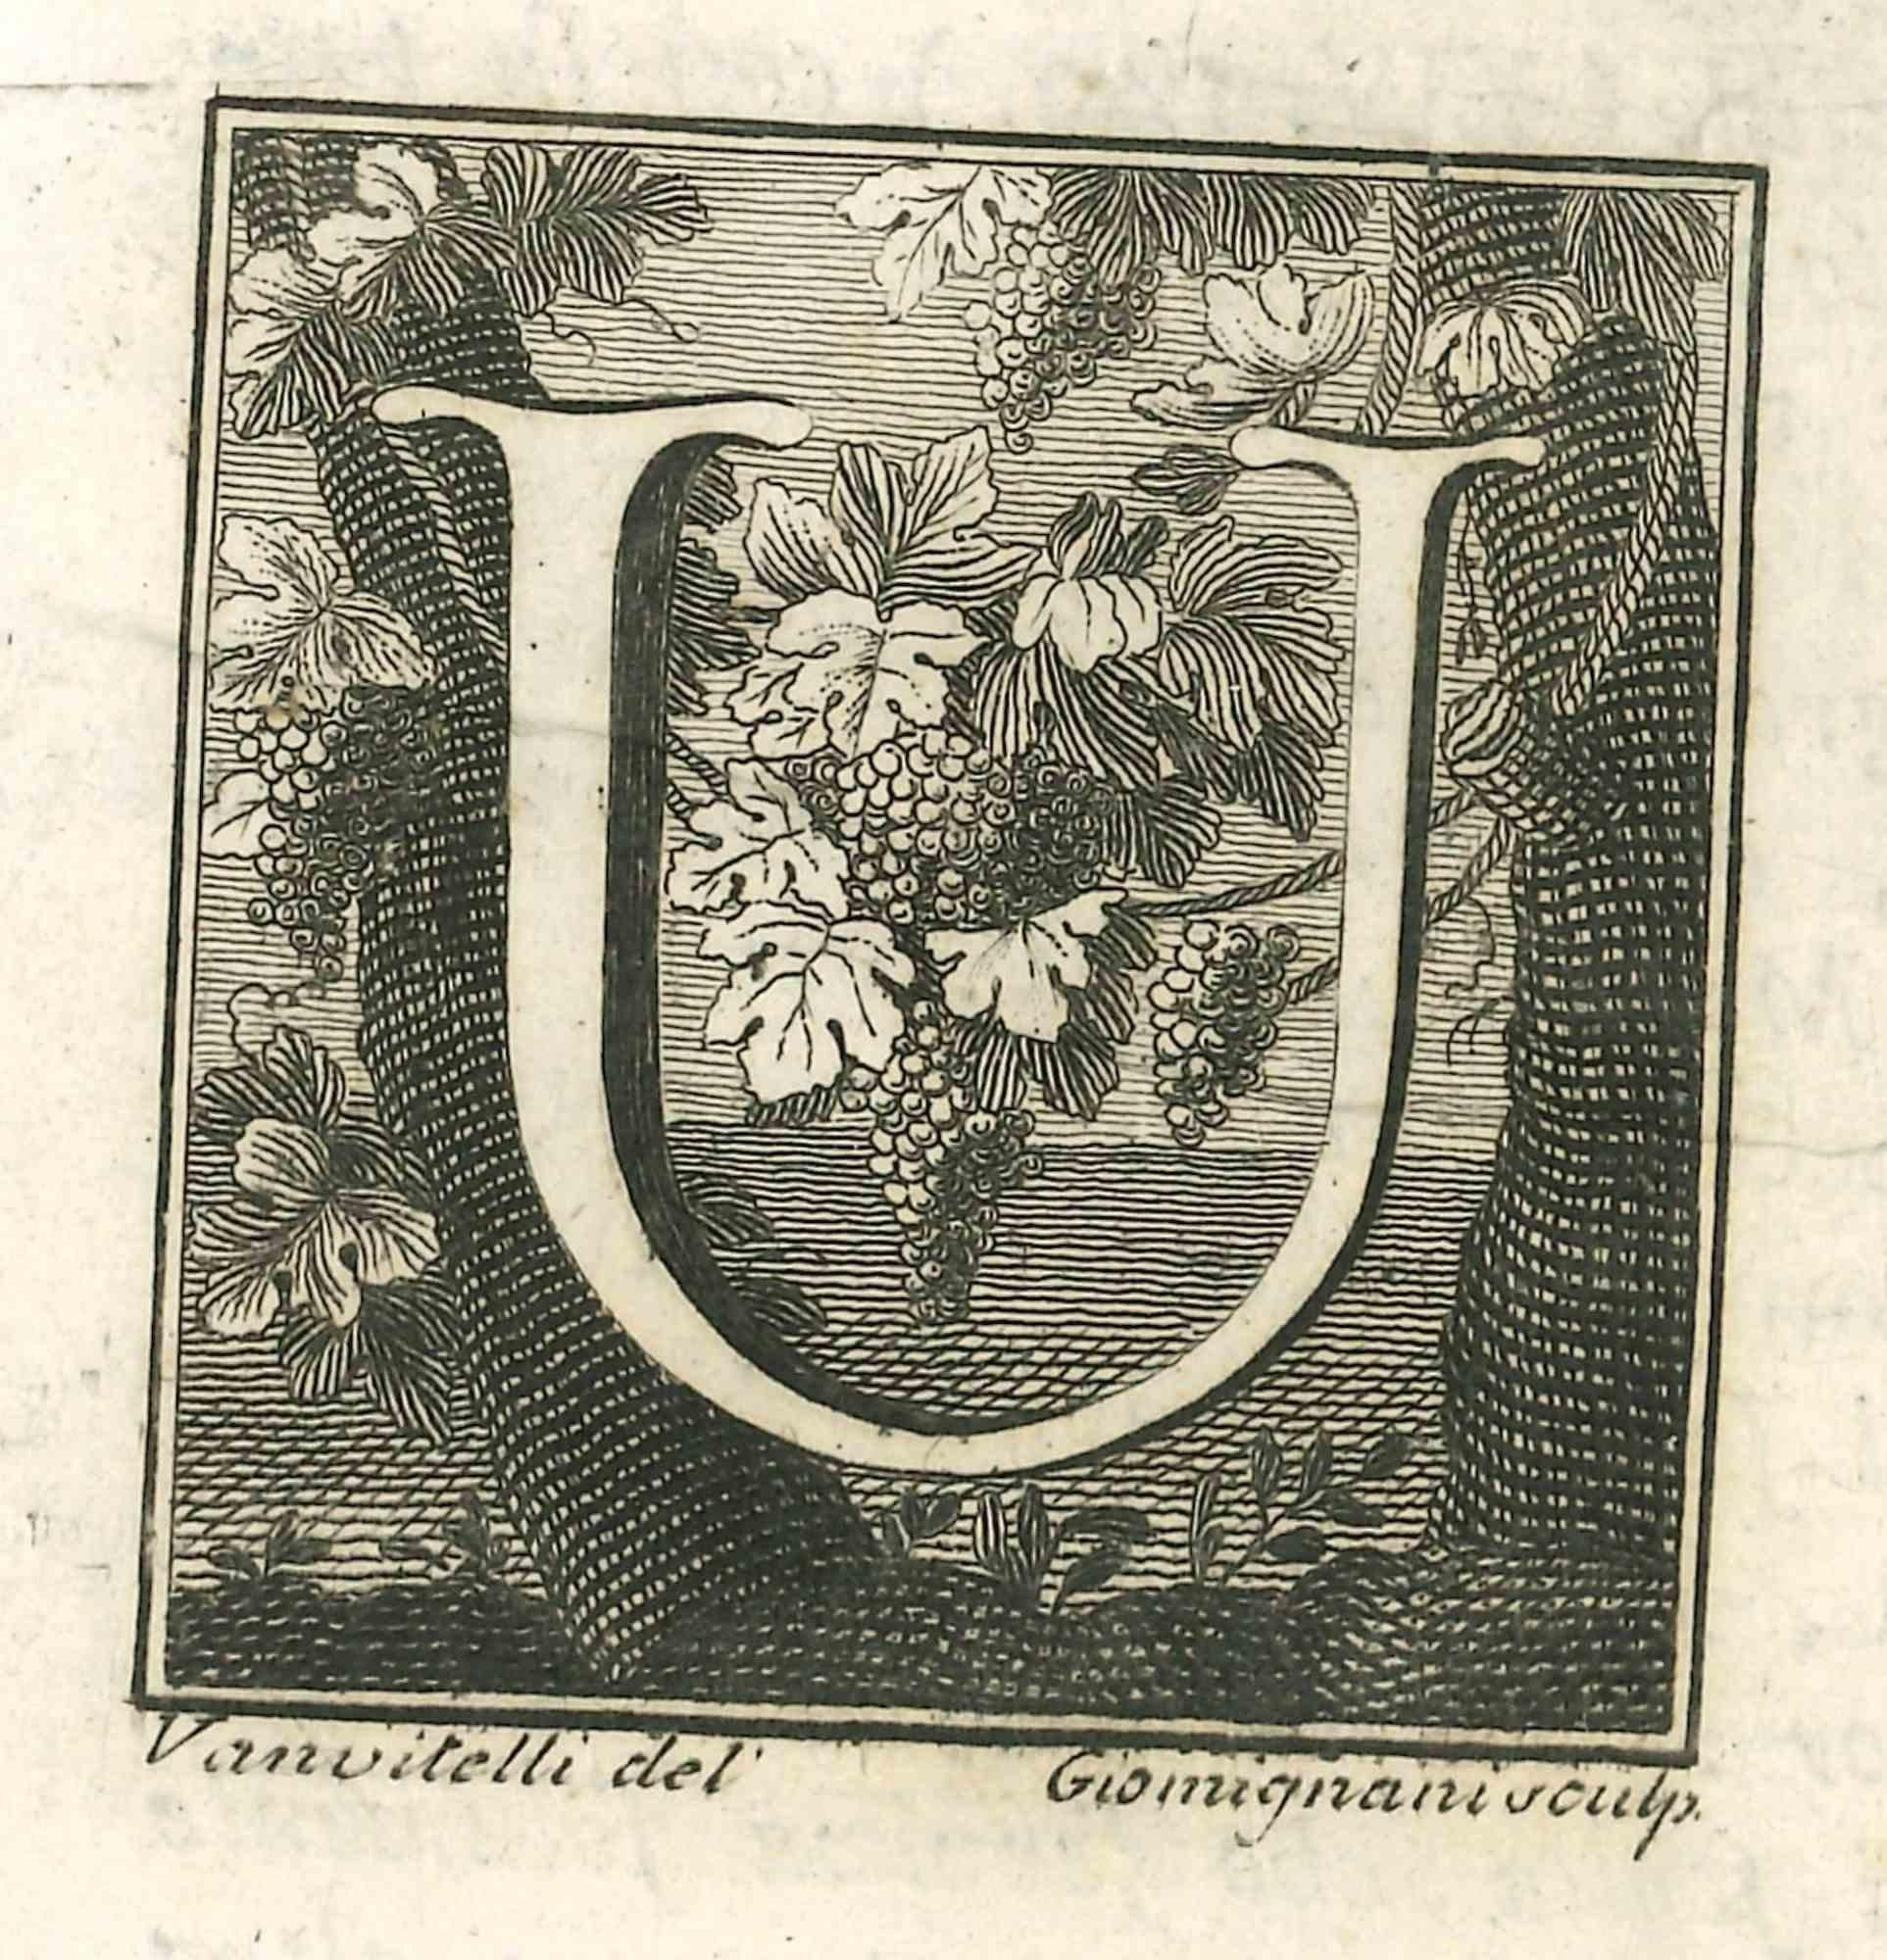 La lettre A est une gravure réalisée par Luigi Vanvitelli, artiste du XVIIIe siècle.

La gravure appartient à la suite d'estampes "Antiquités d'Herculanum exposées" (titre original : "Le Antichità di Ercolano Esposte"), un volume de huit gravures